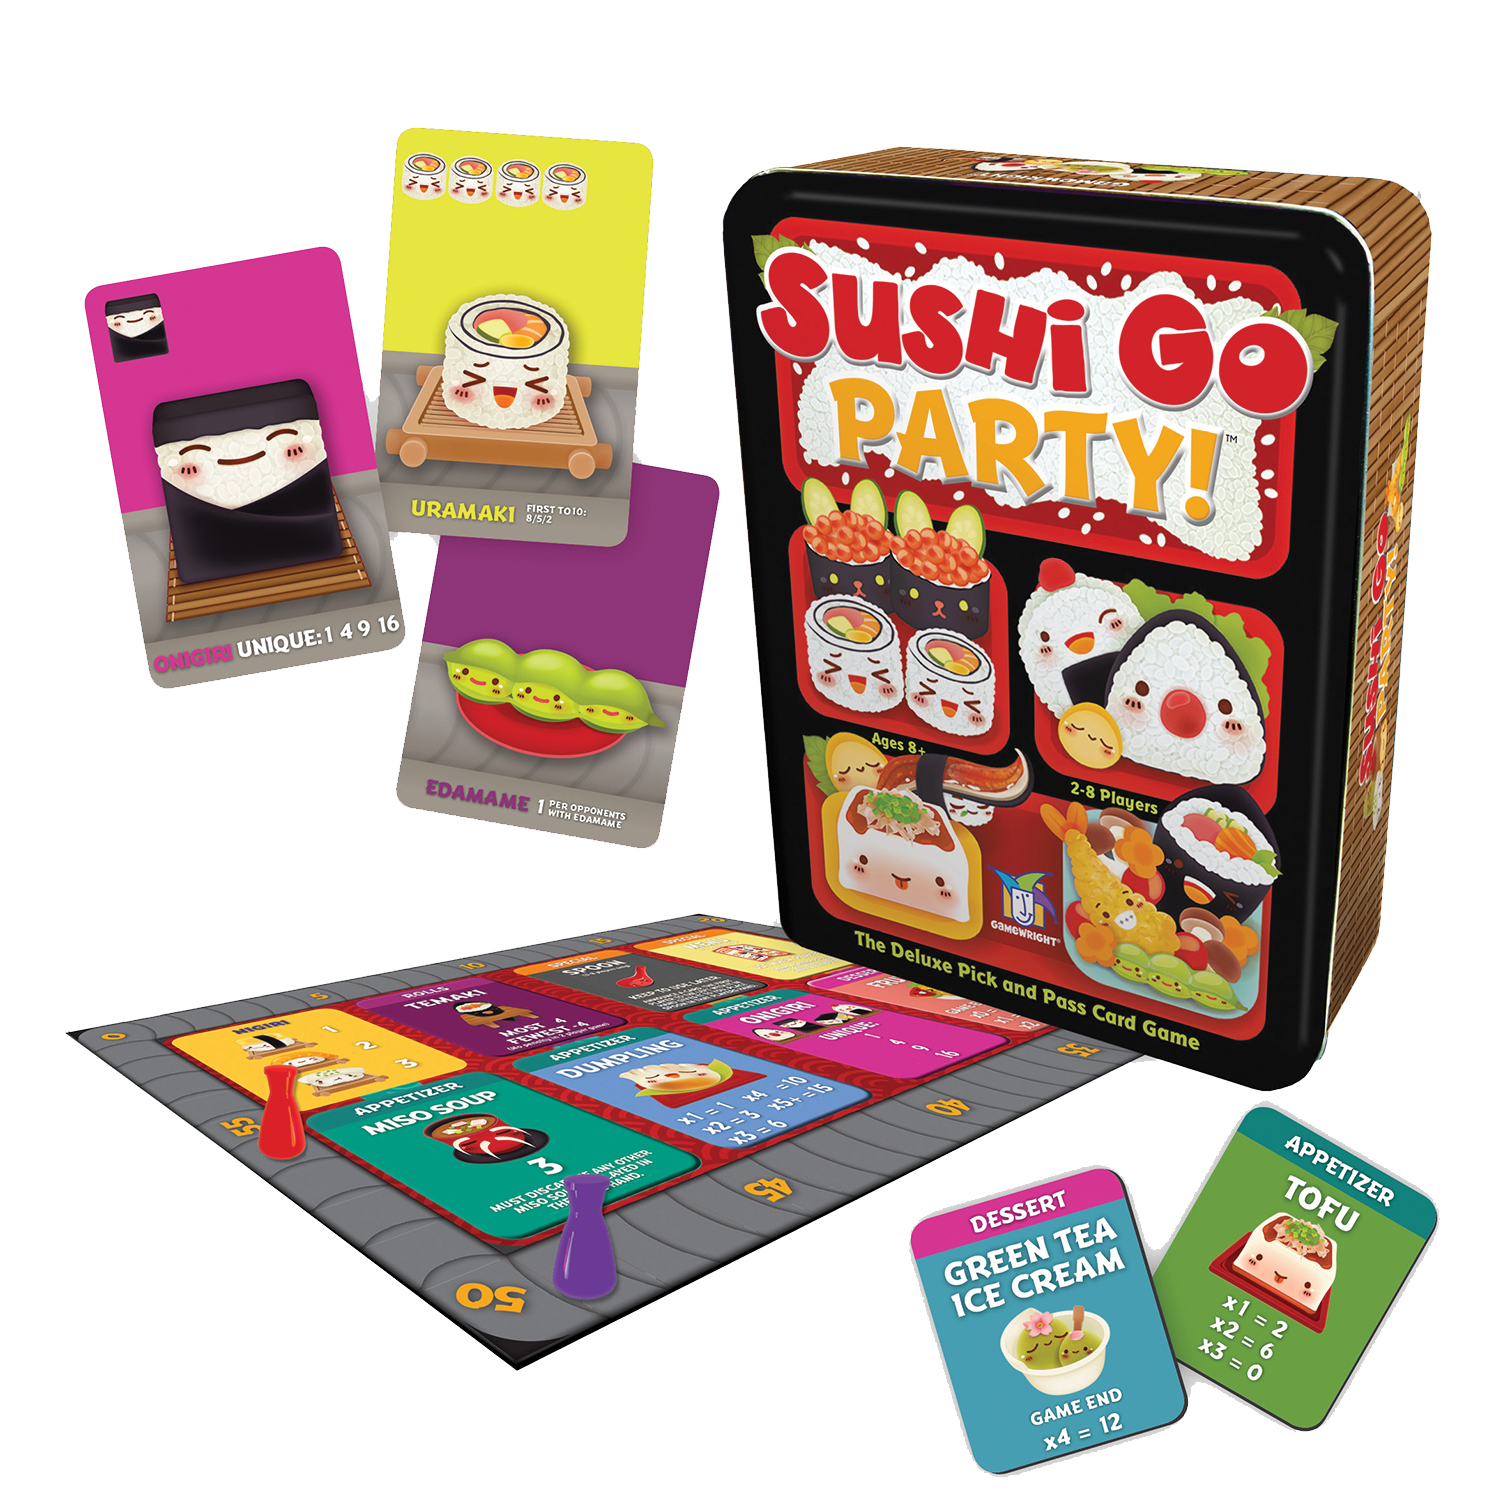 Sushi Go PartyTM